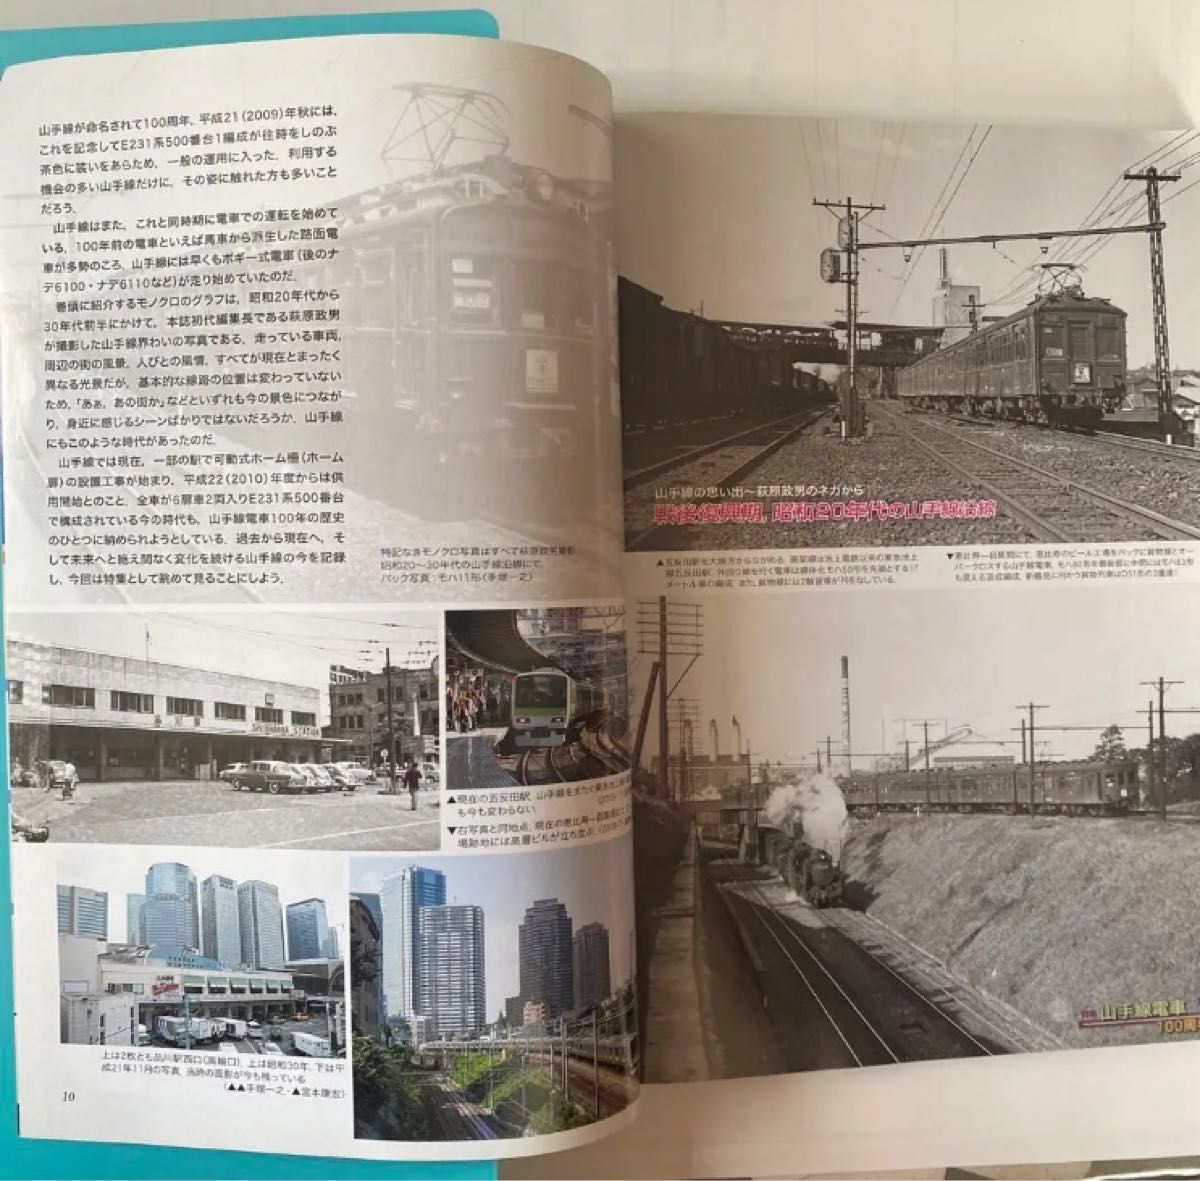 鉄道ファン2010年2月号　Vol.50/586 山手線電車100周年　#mf